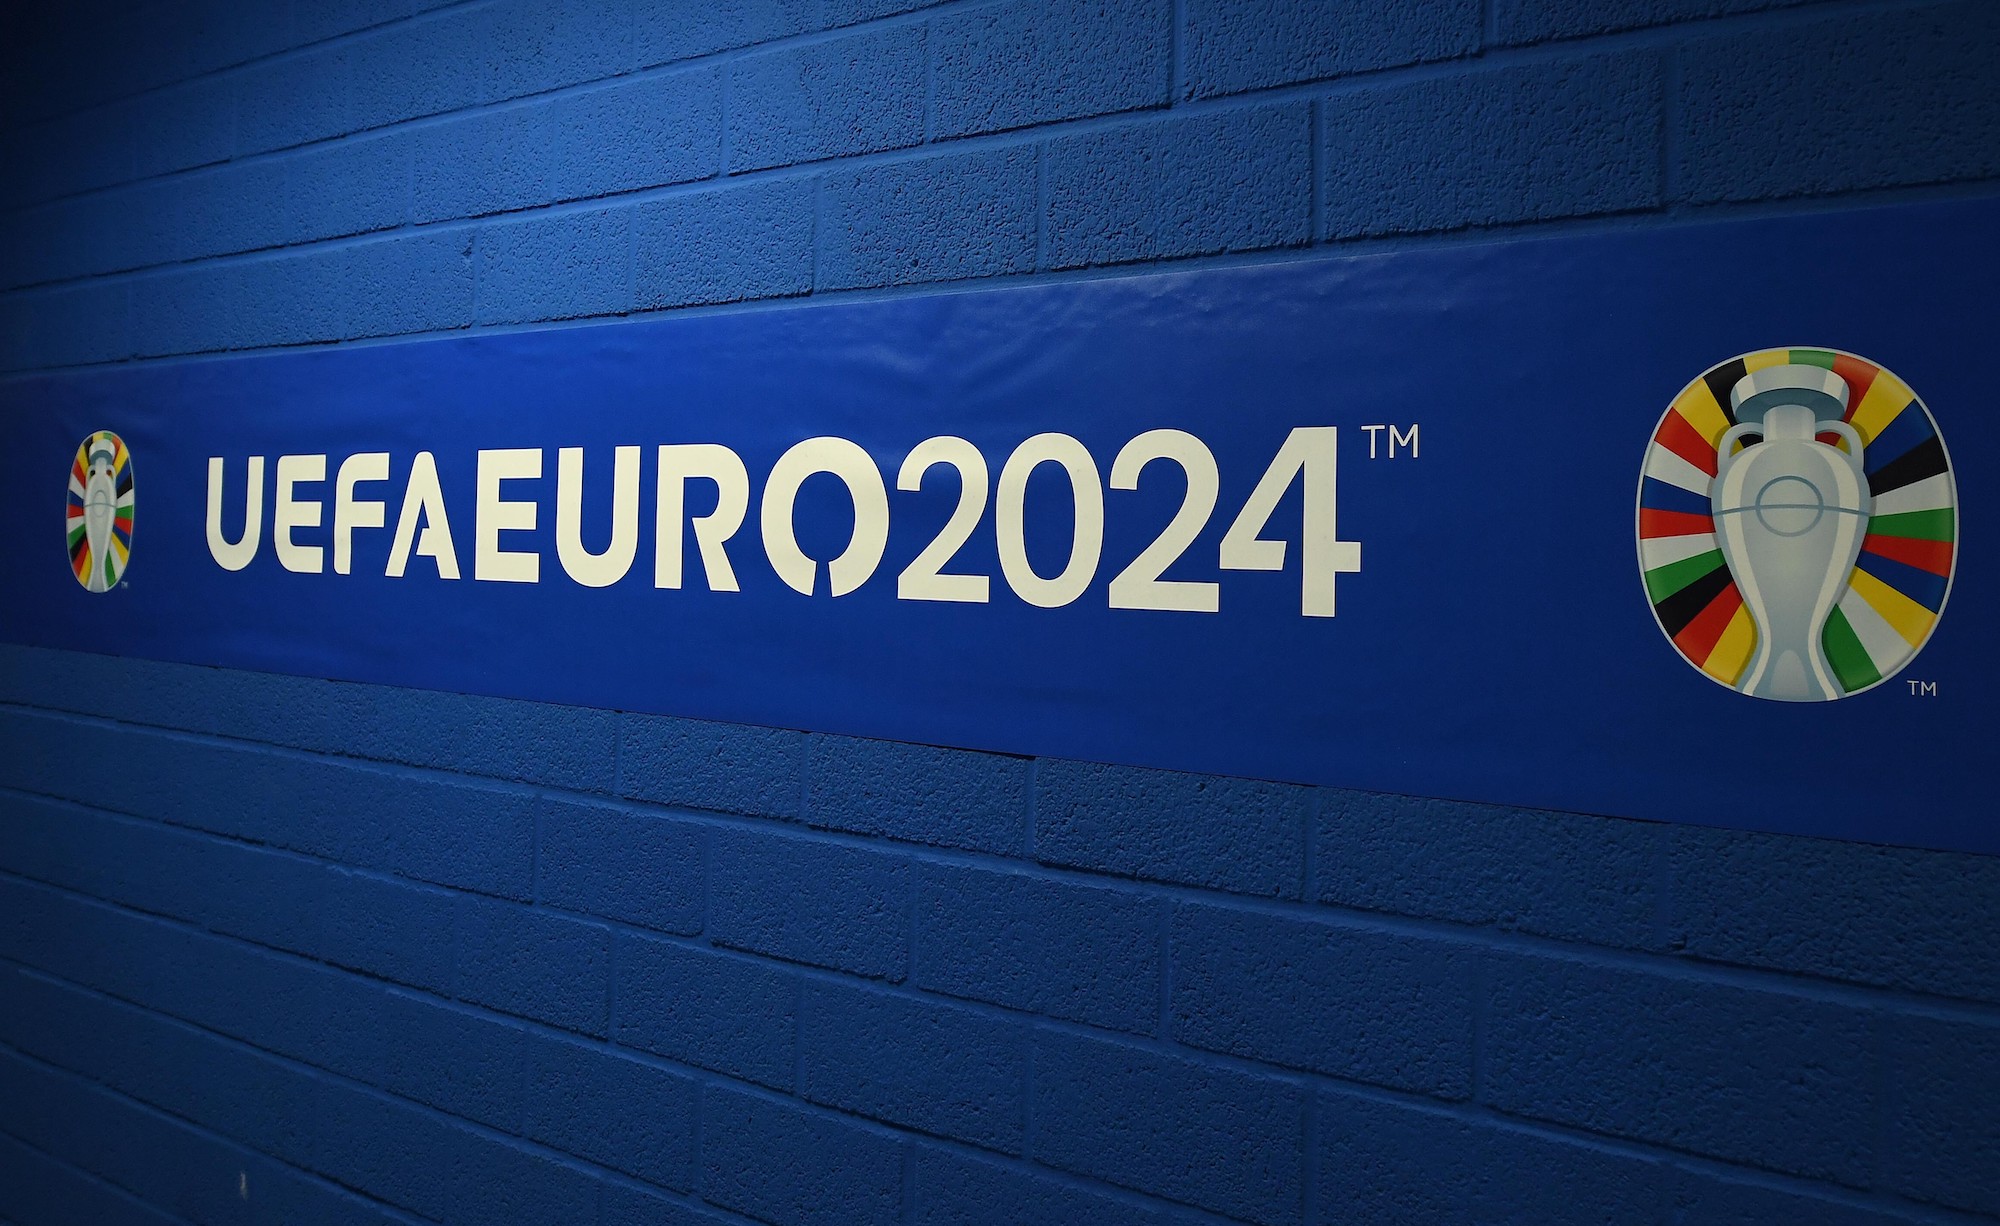 Uefa Euro 2024